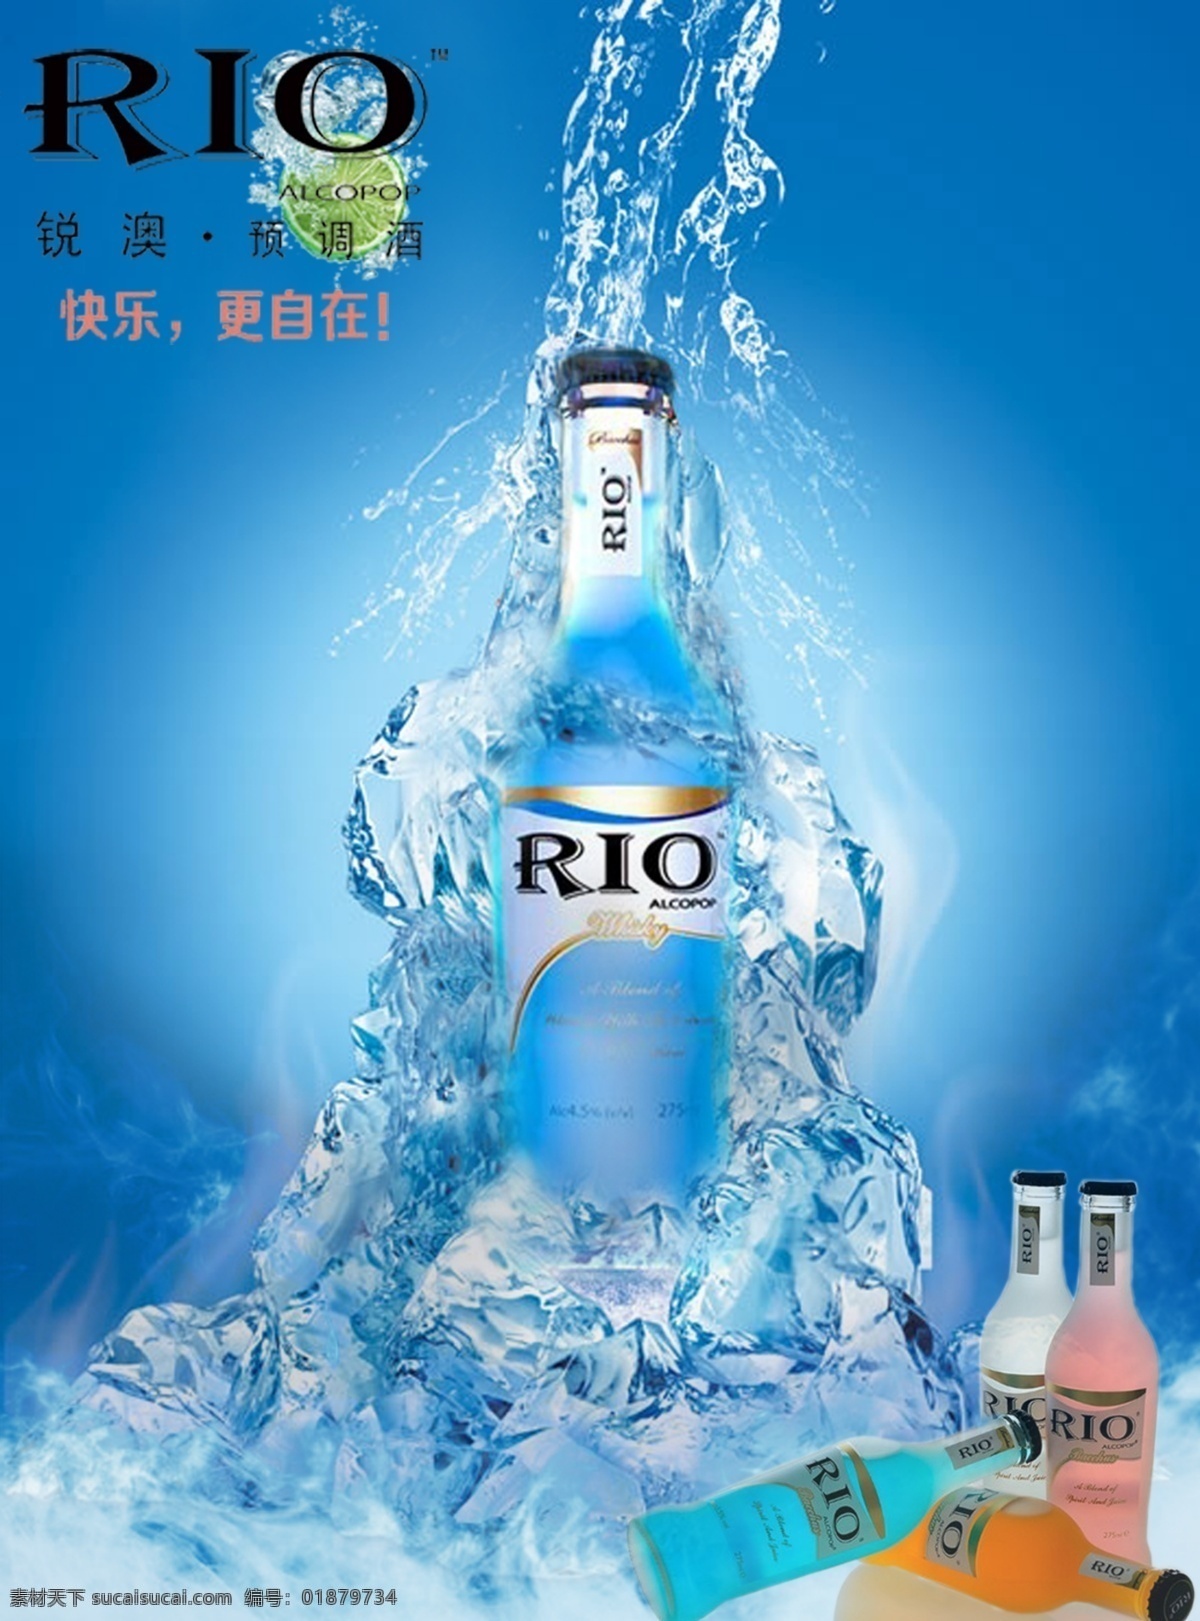 rio海报 rio蓝色瓶 rio冰块 rio 蓝色 背景 海报 rio宣传 rio酒素材